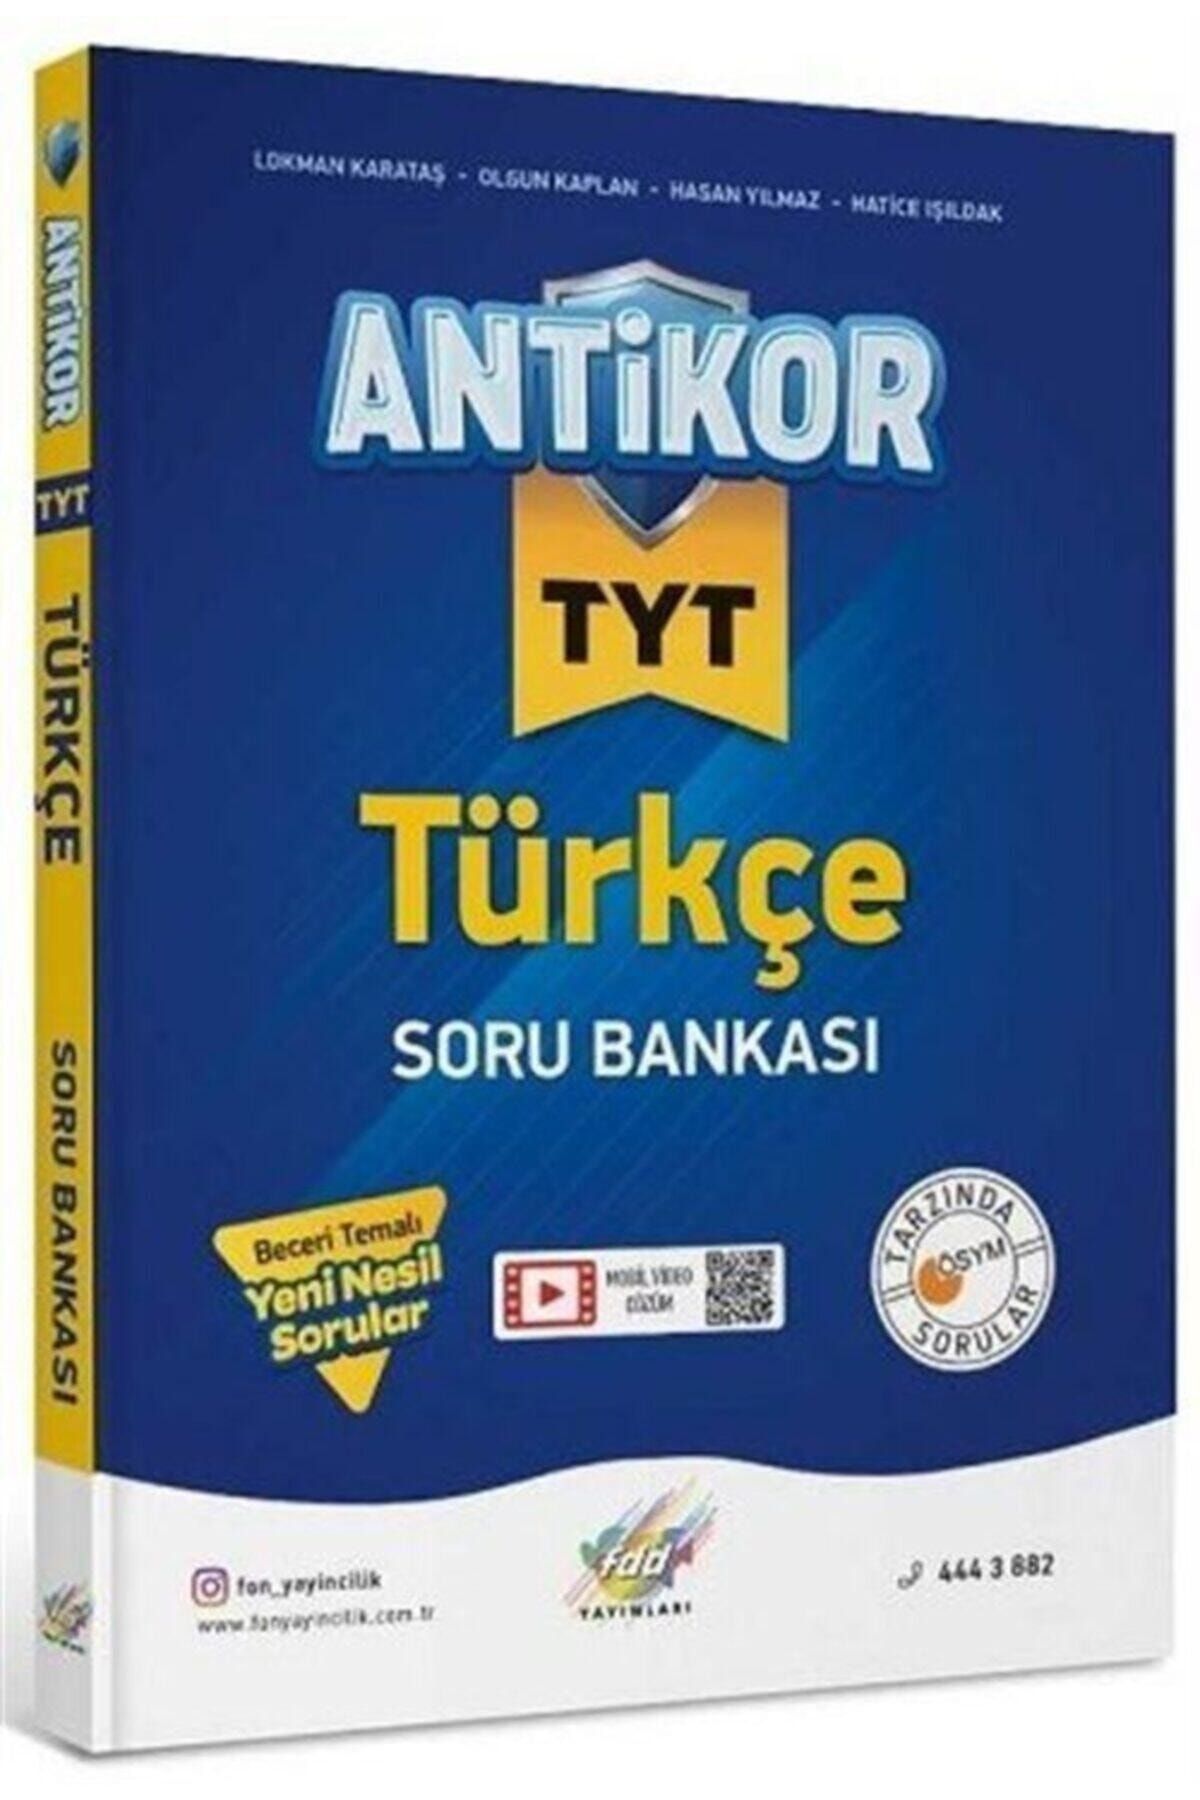 Fdd Yayınları Tyt Antikor Türkçe Soru Bankası